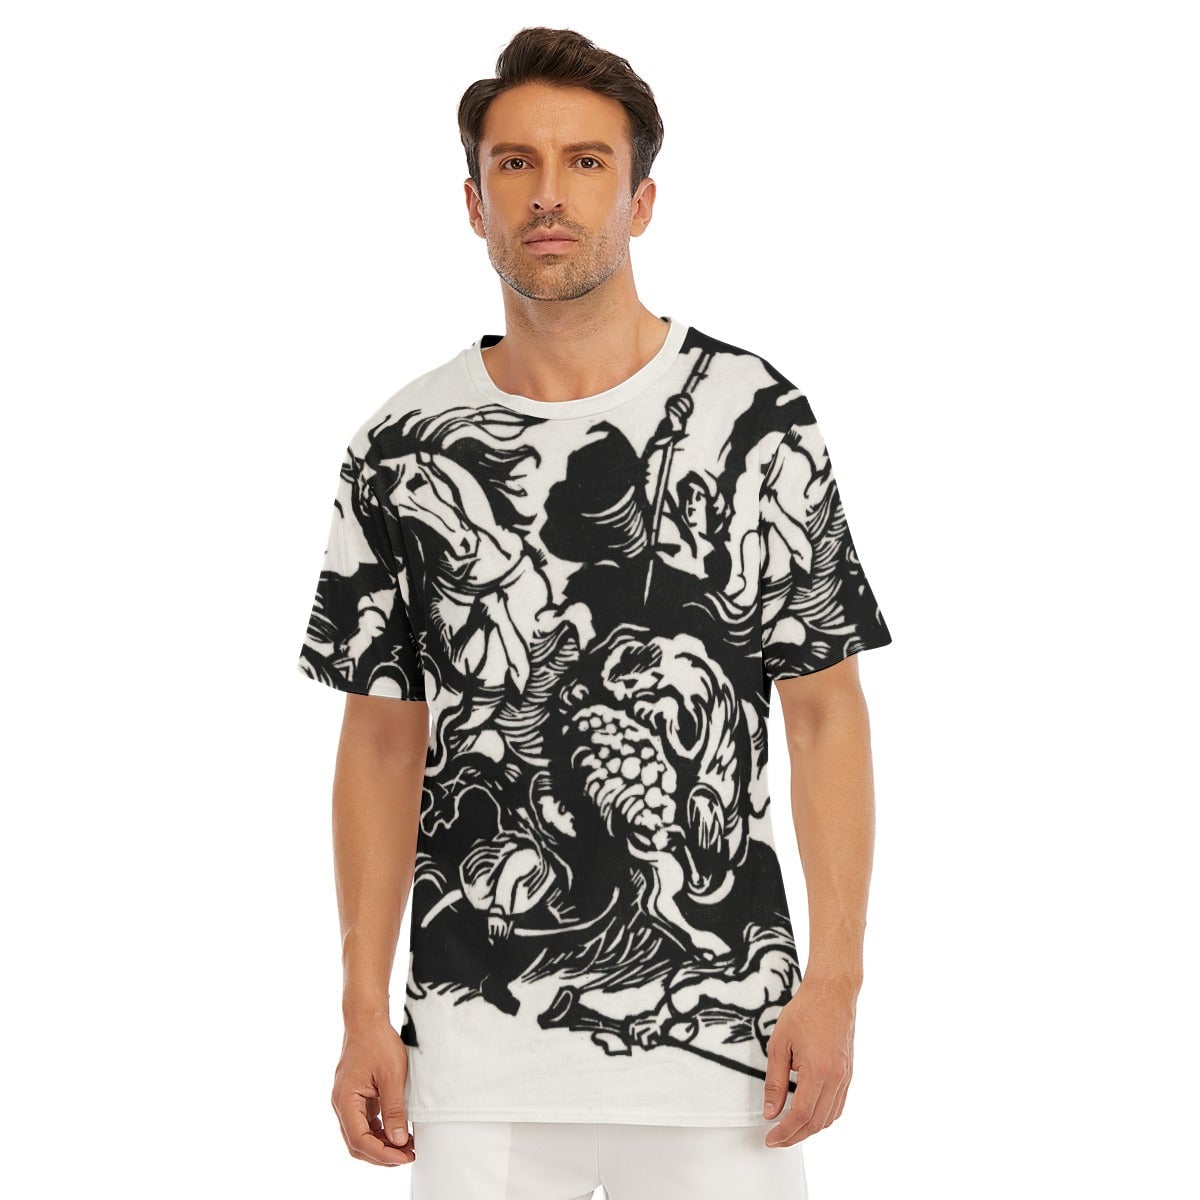 Franz Marc’s Lion Hunt T-Shirt - Famous Artwork Tee